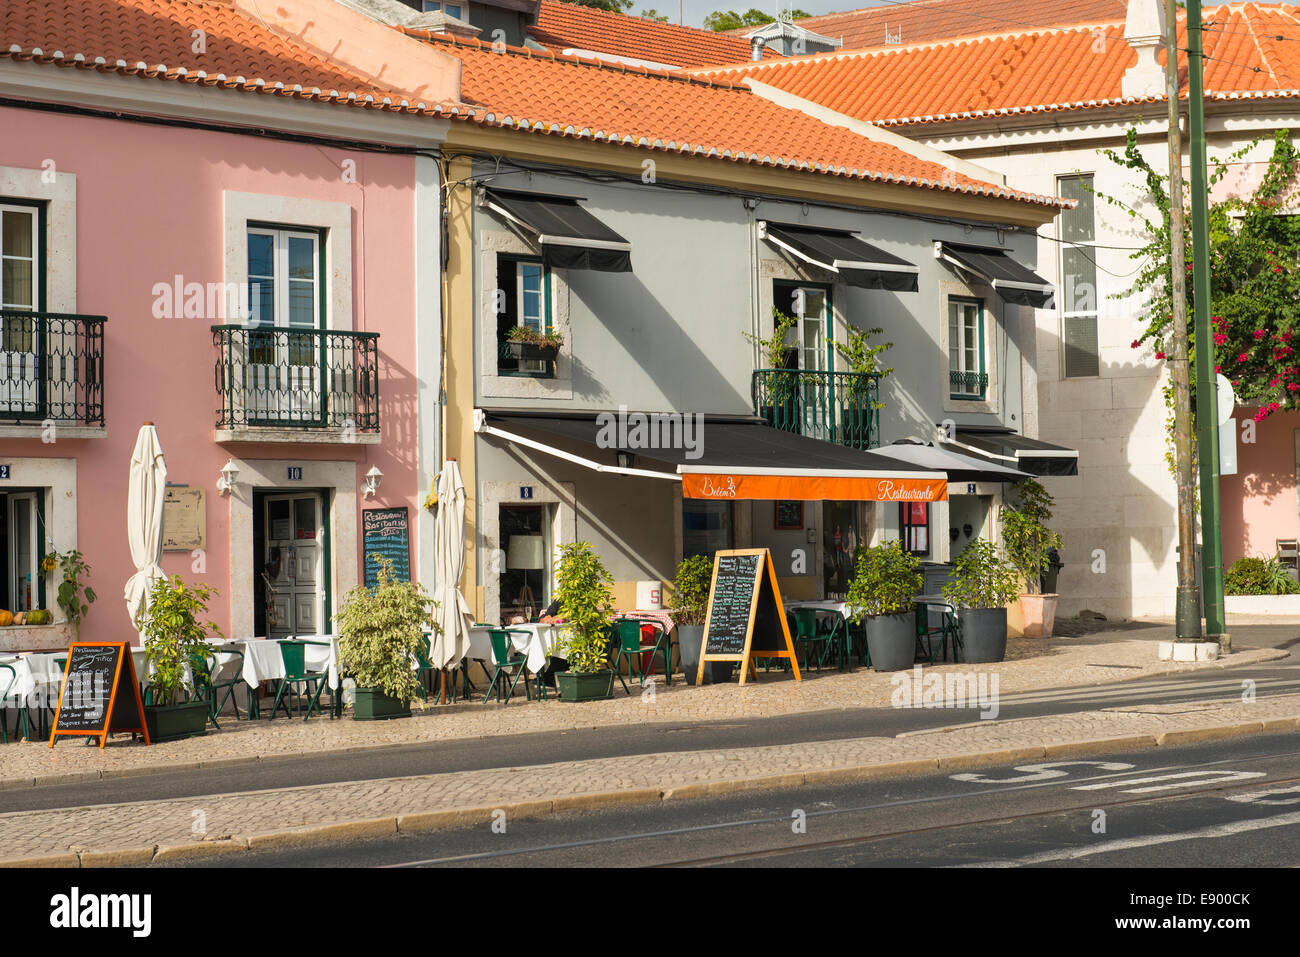 Portugal-Lissabon-Szene typischen lokalen Pflaster Restaurant Restaurant Sagitario & Belem 28 Vordach Vordächer blind Blinds Sonnenschirm Stockfoto